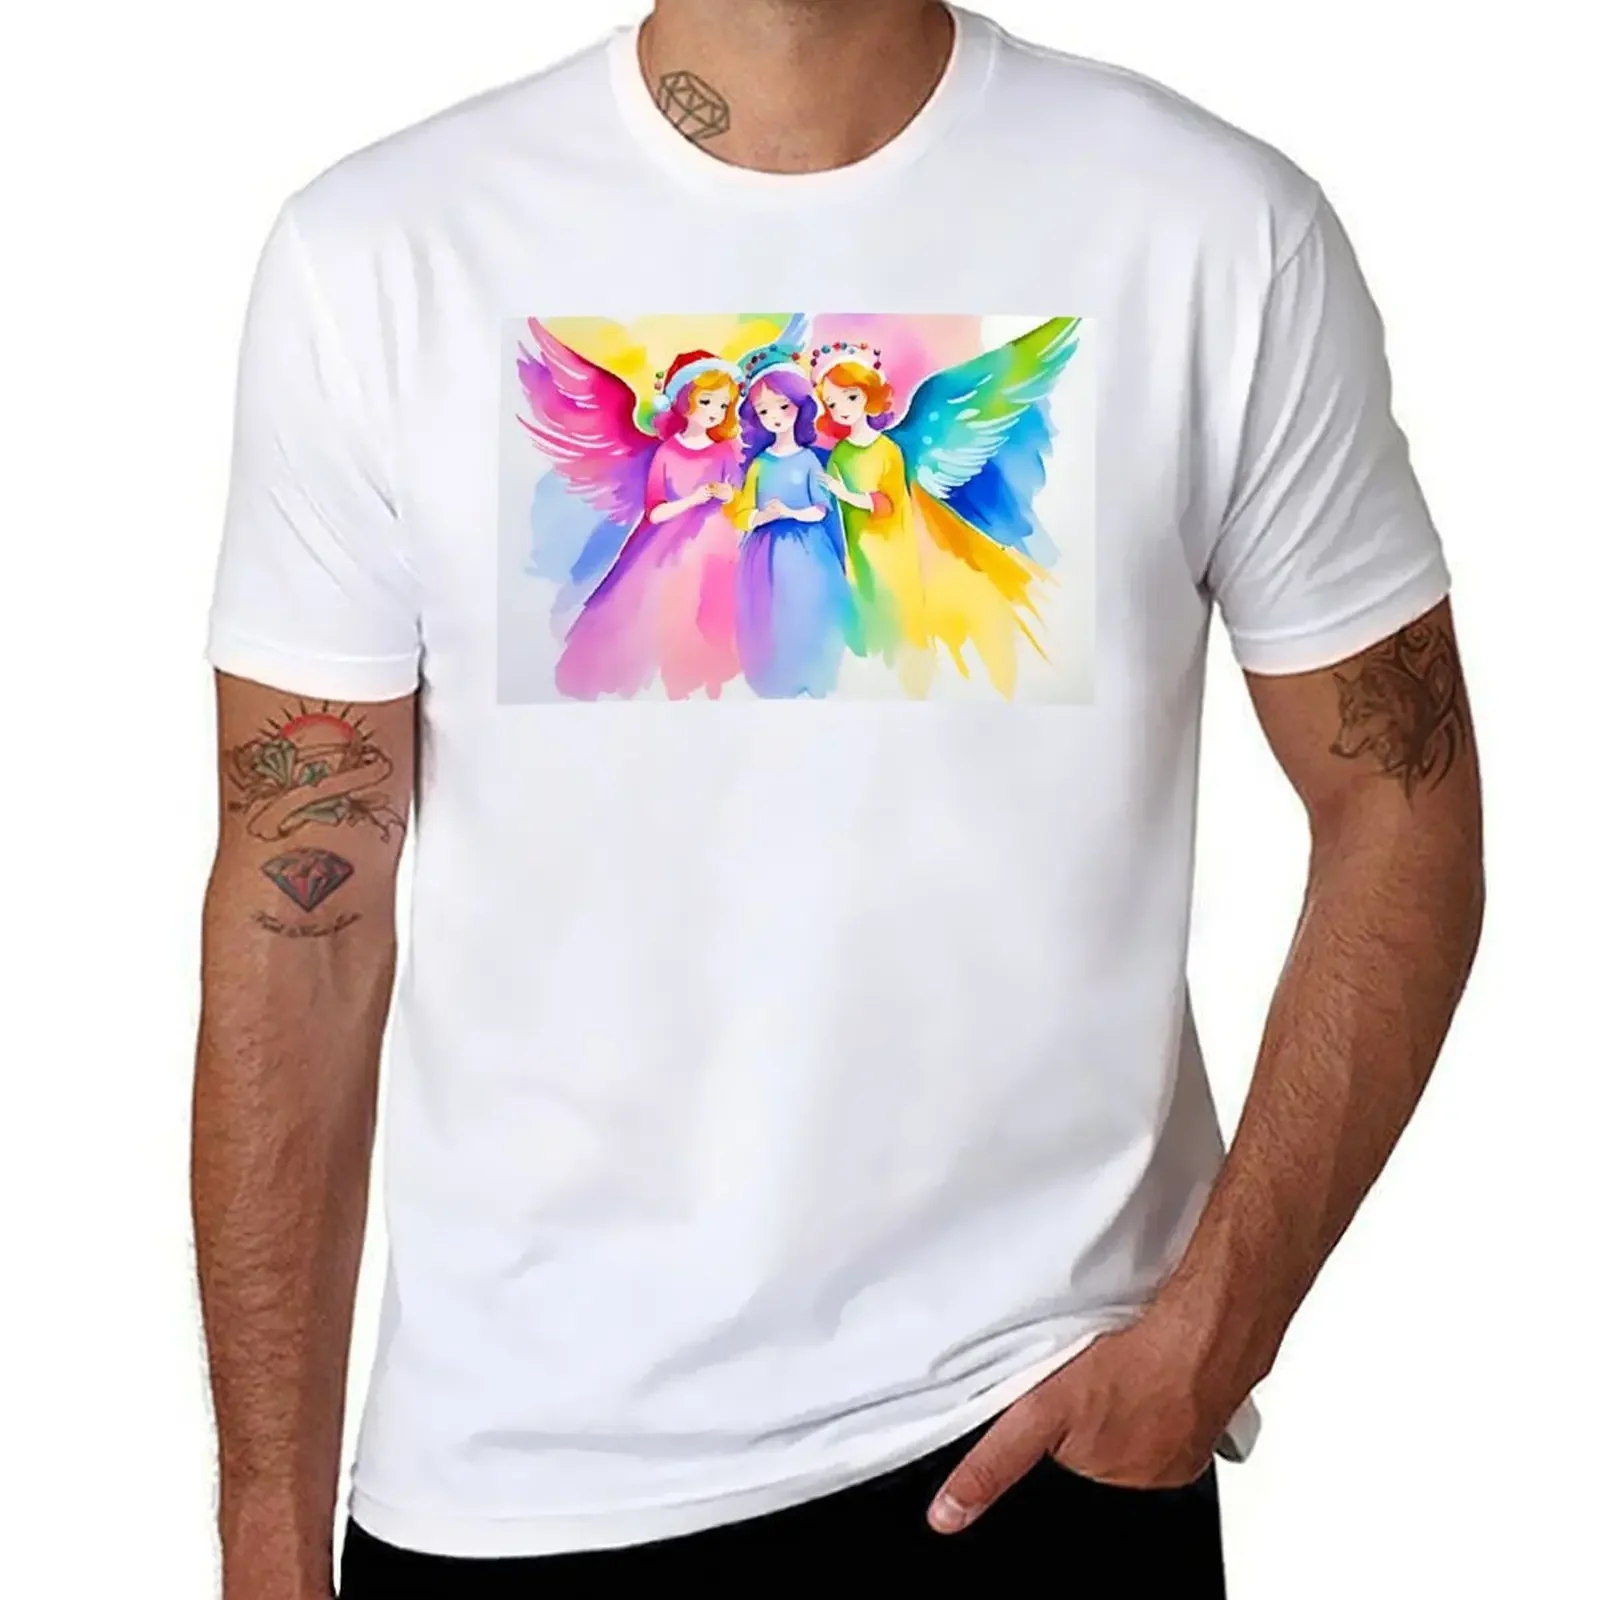 

Футболка с изображением трех ангелов I, индивидуальные черные мужские футболки больших размеров, индивидуальный дизайн